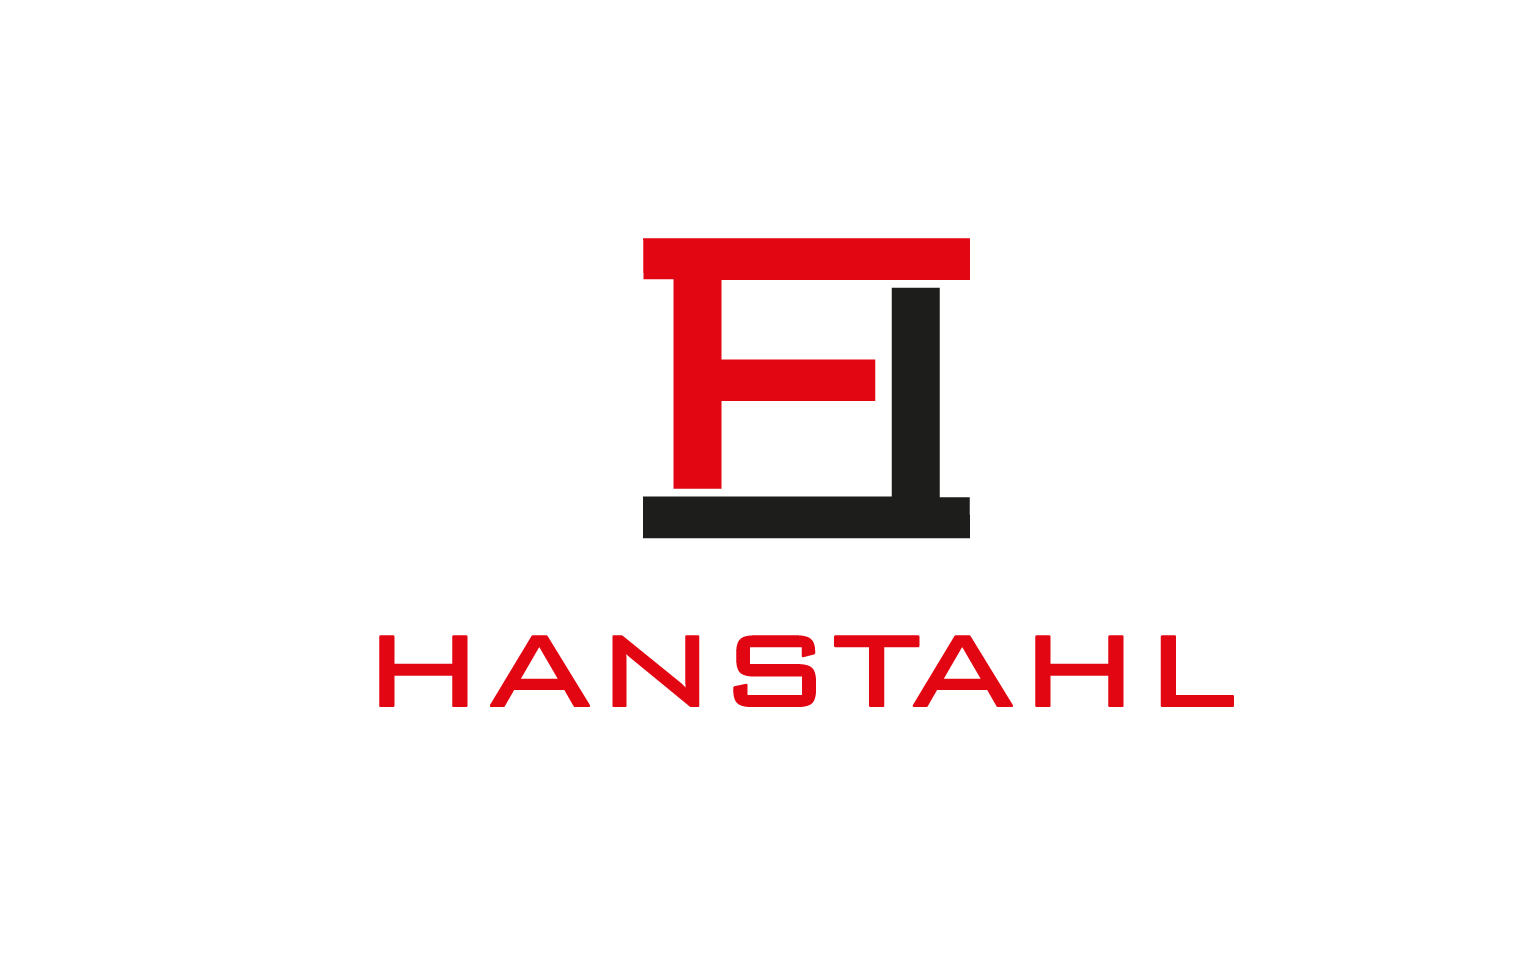 Hanstahl